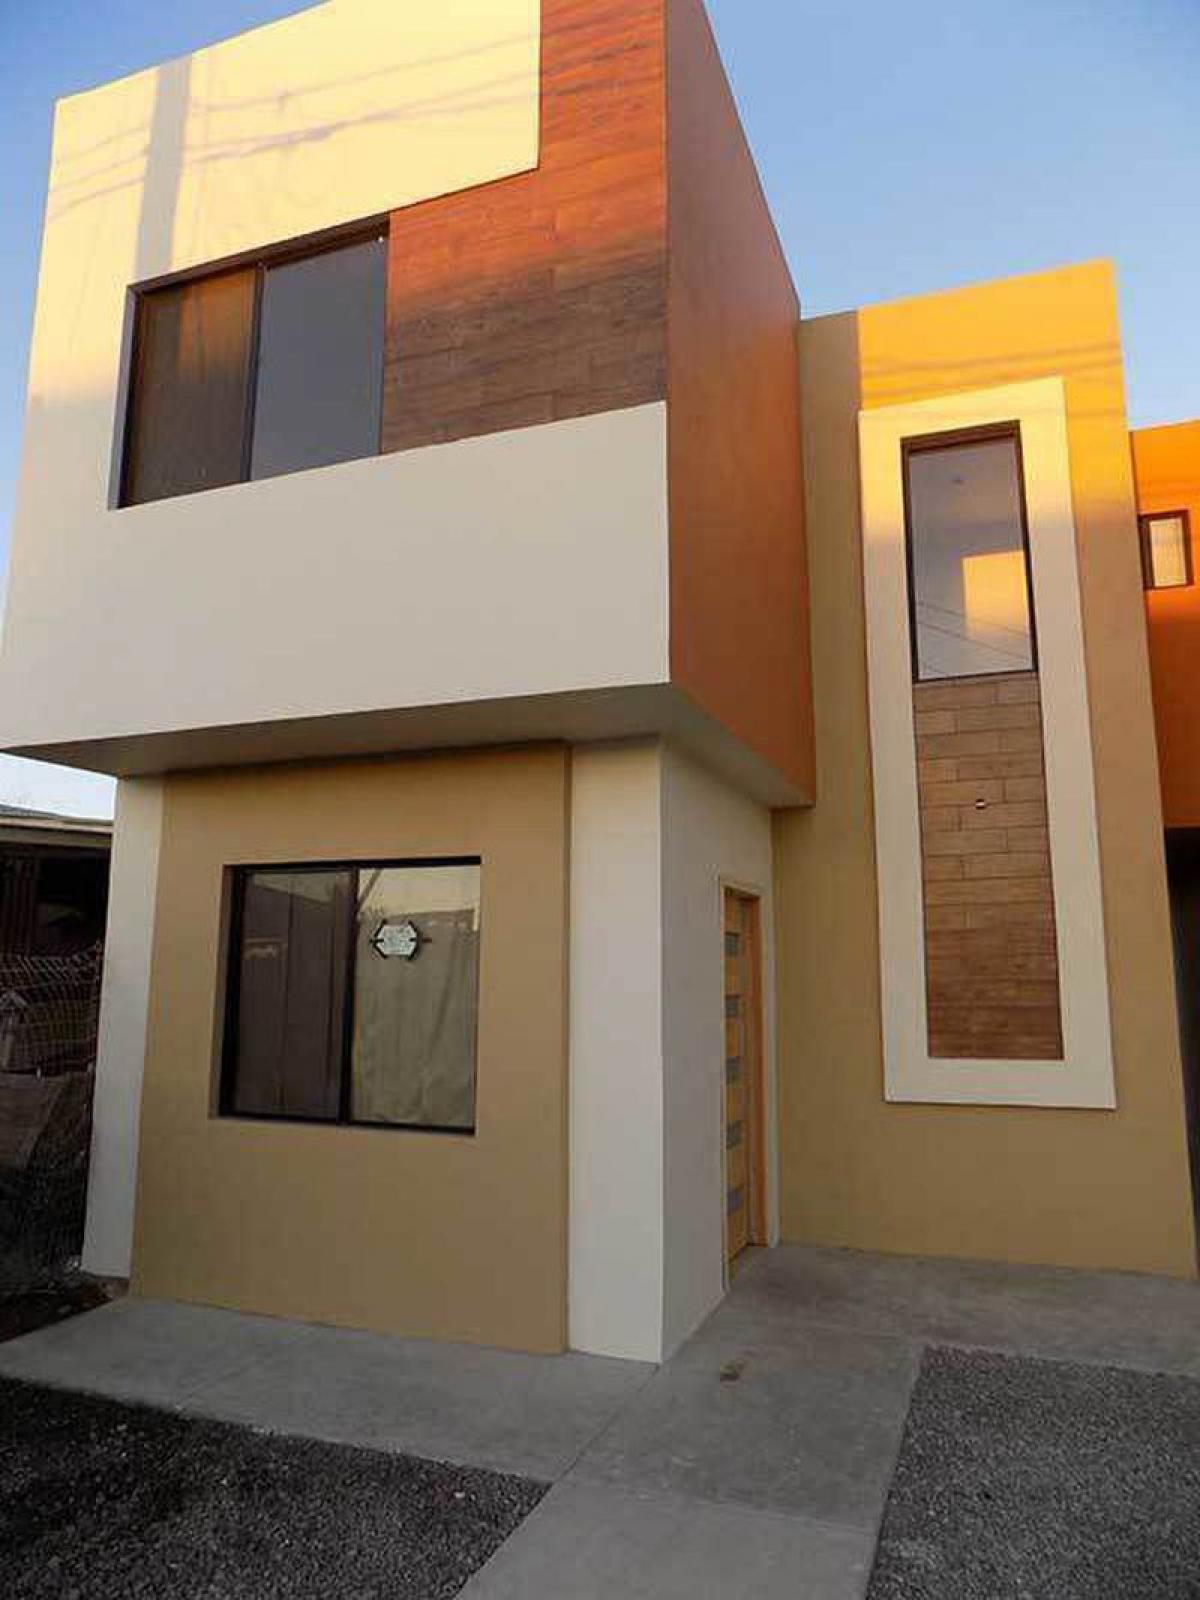 Picture of Home For Sale in Ensenada, Baja California, Mexico